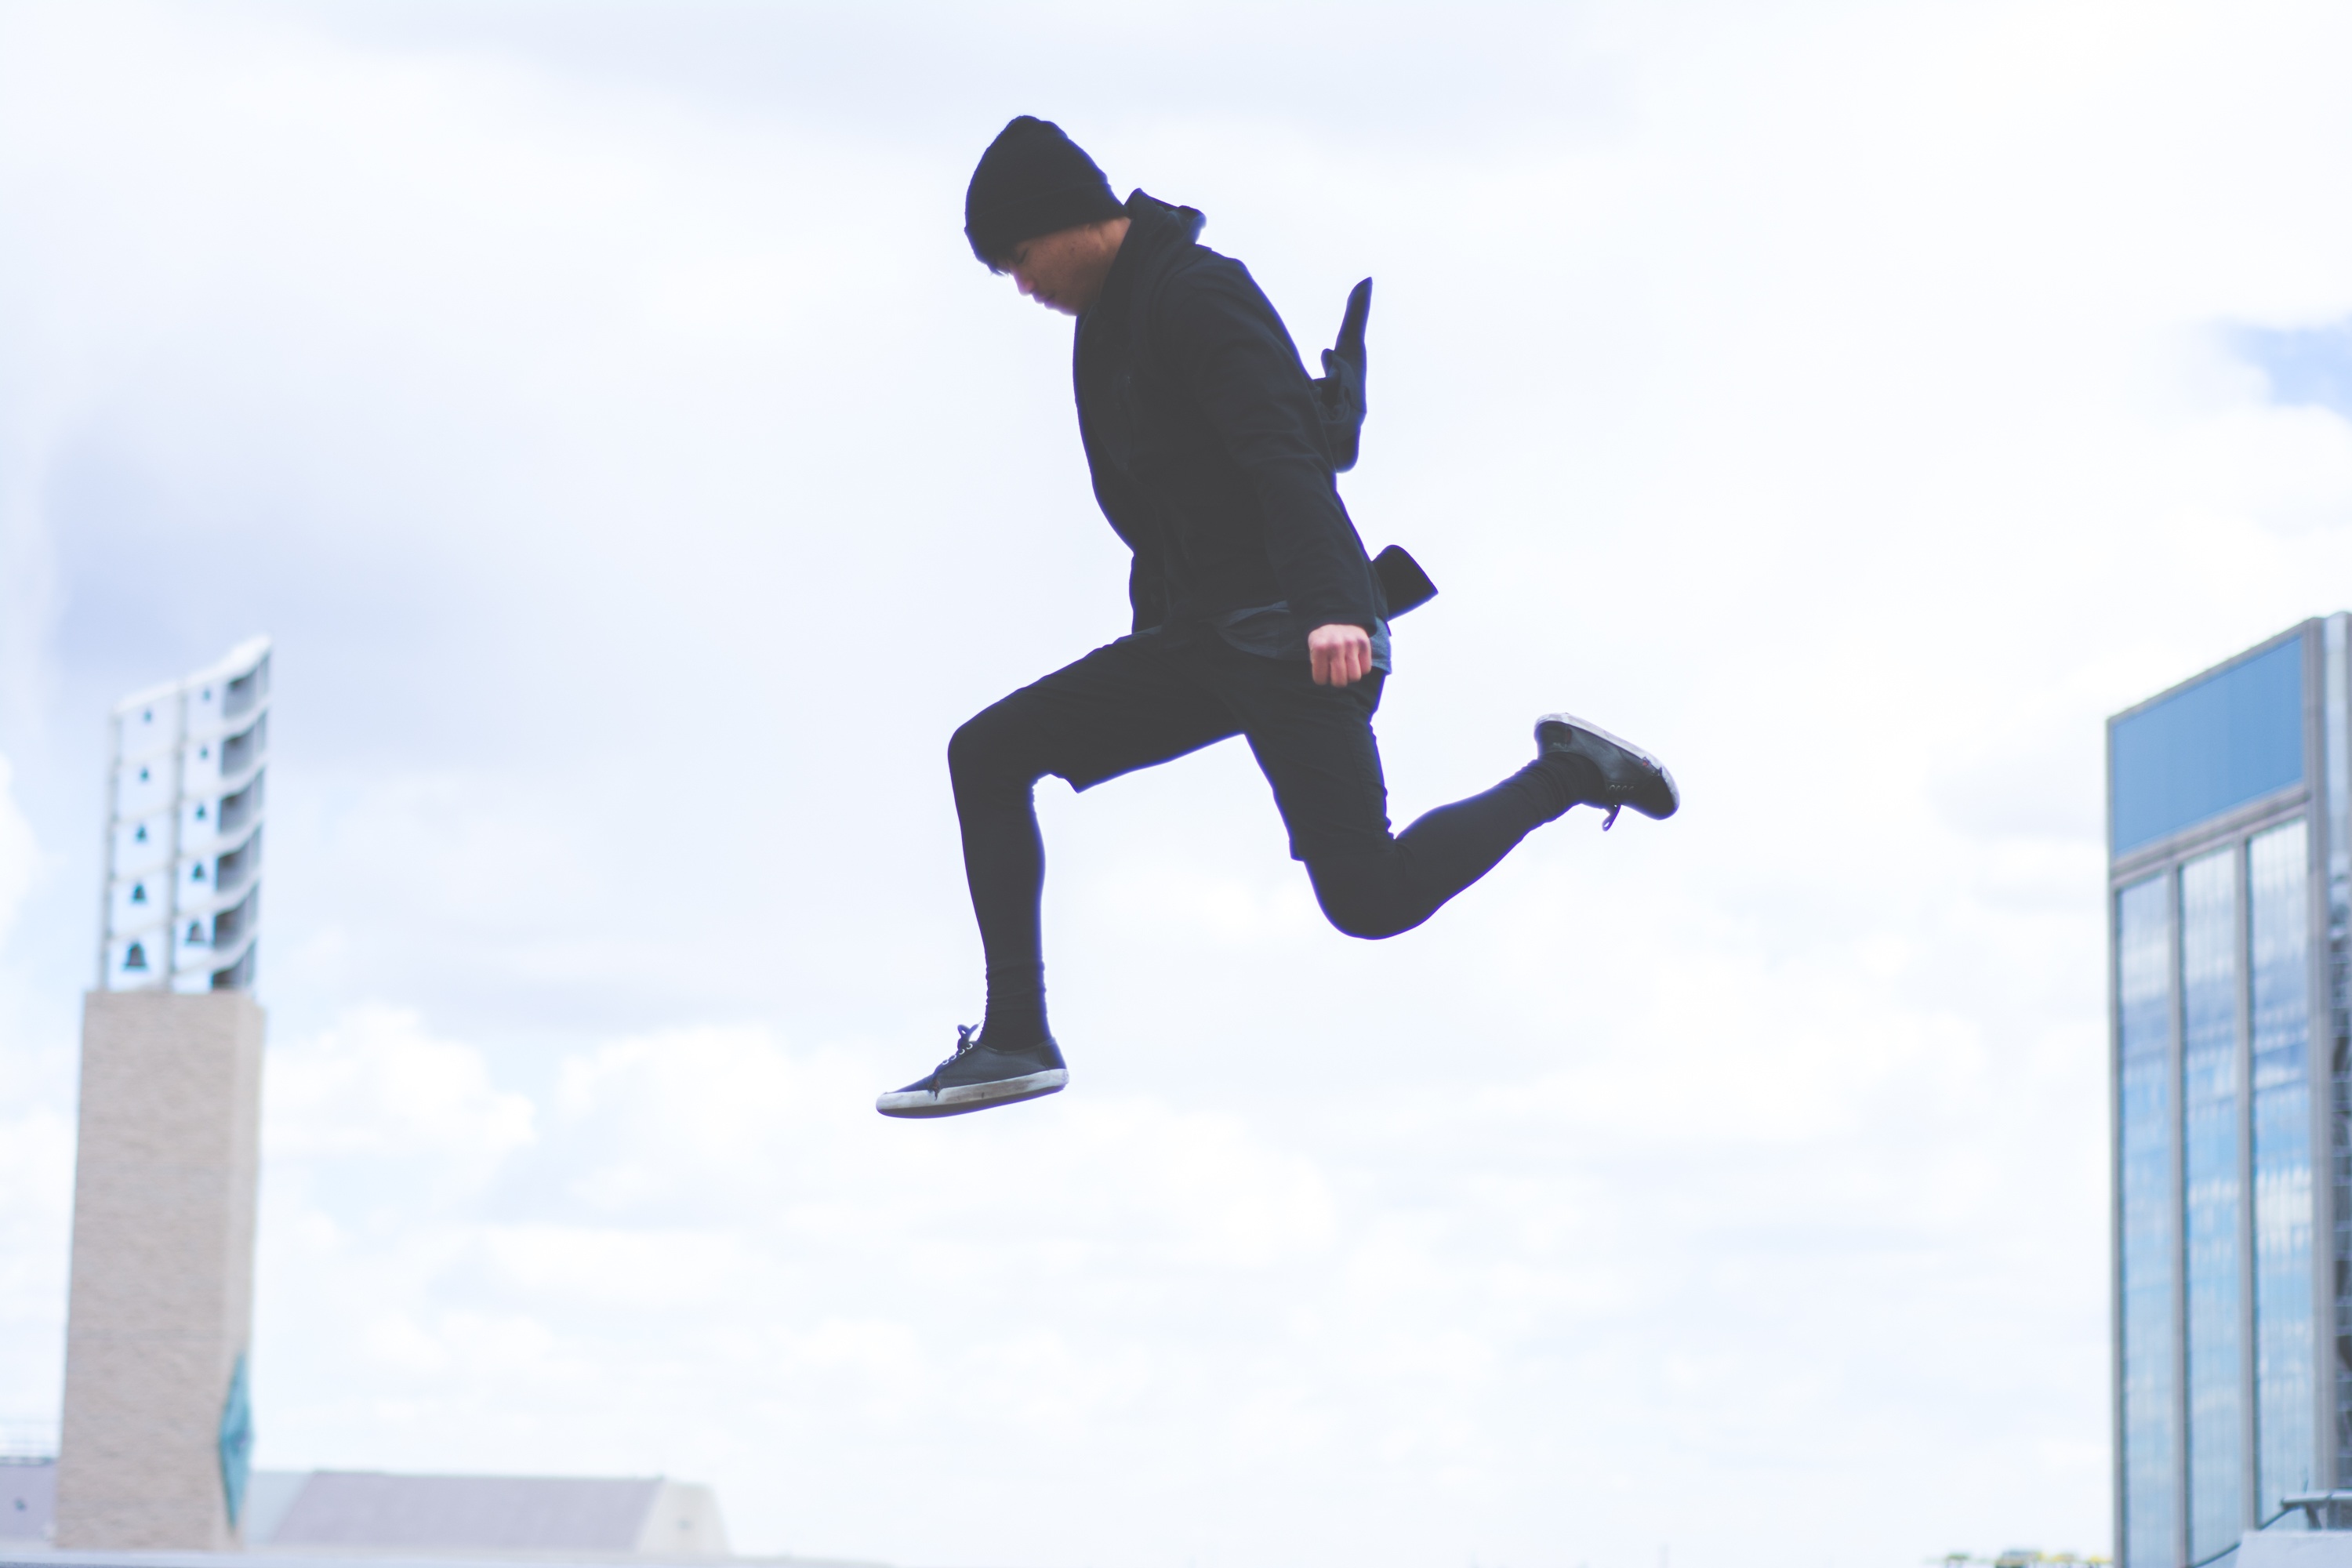 Junger Mann, schwarz gekleidet springt über Dächer